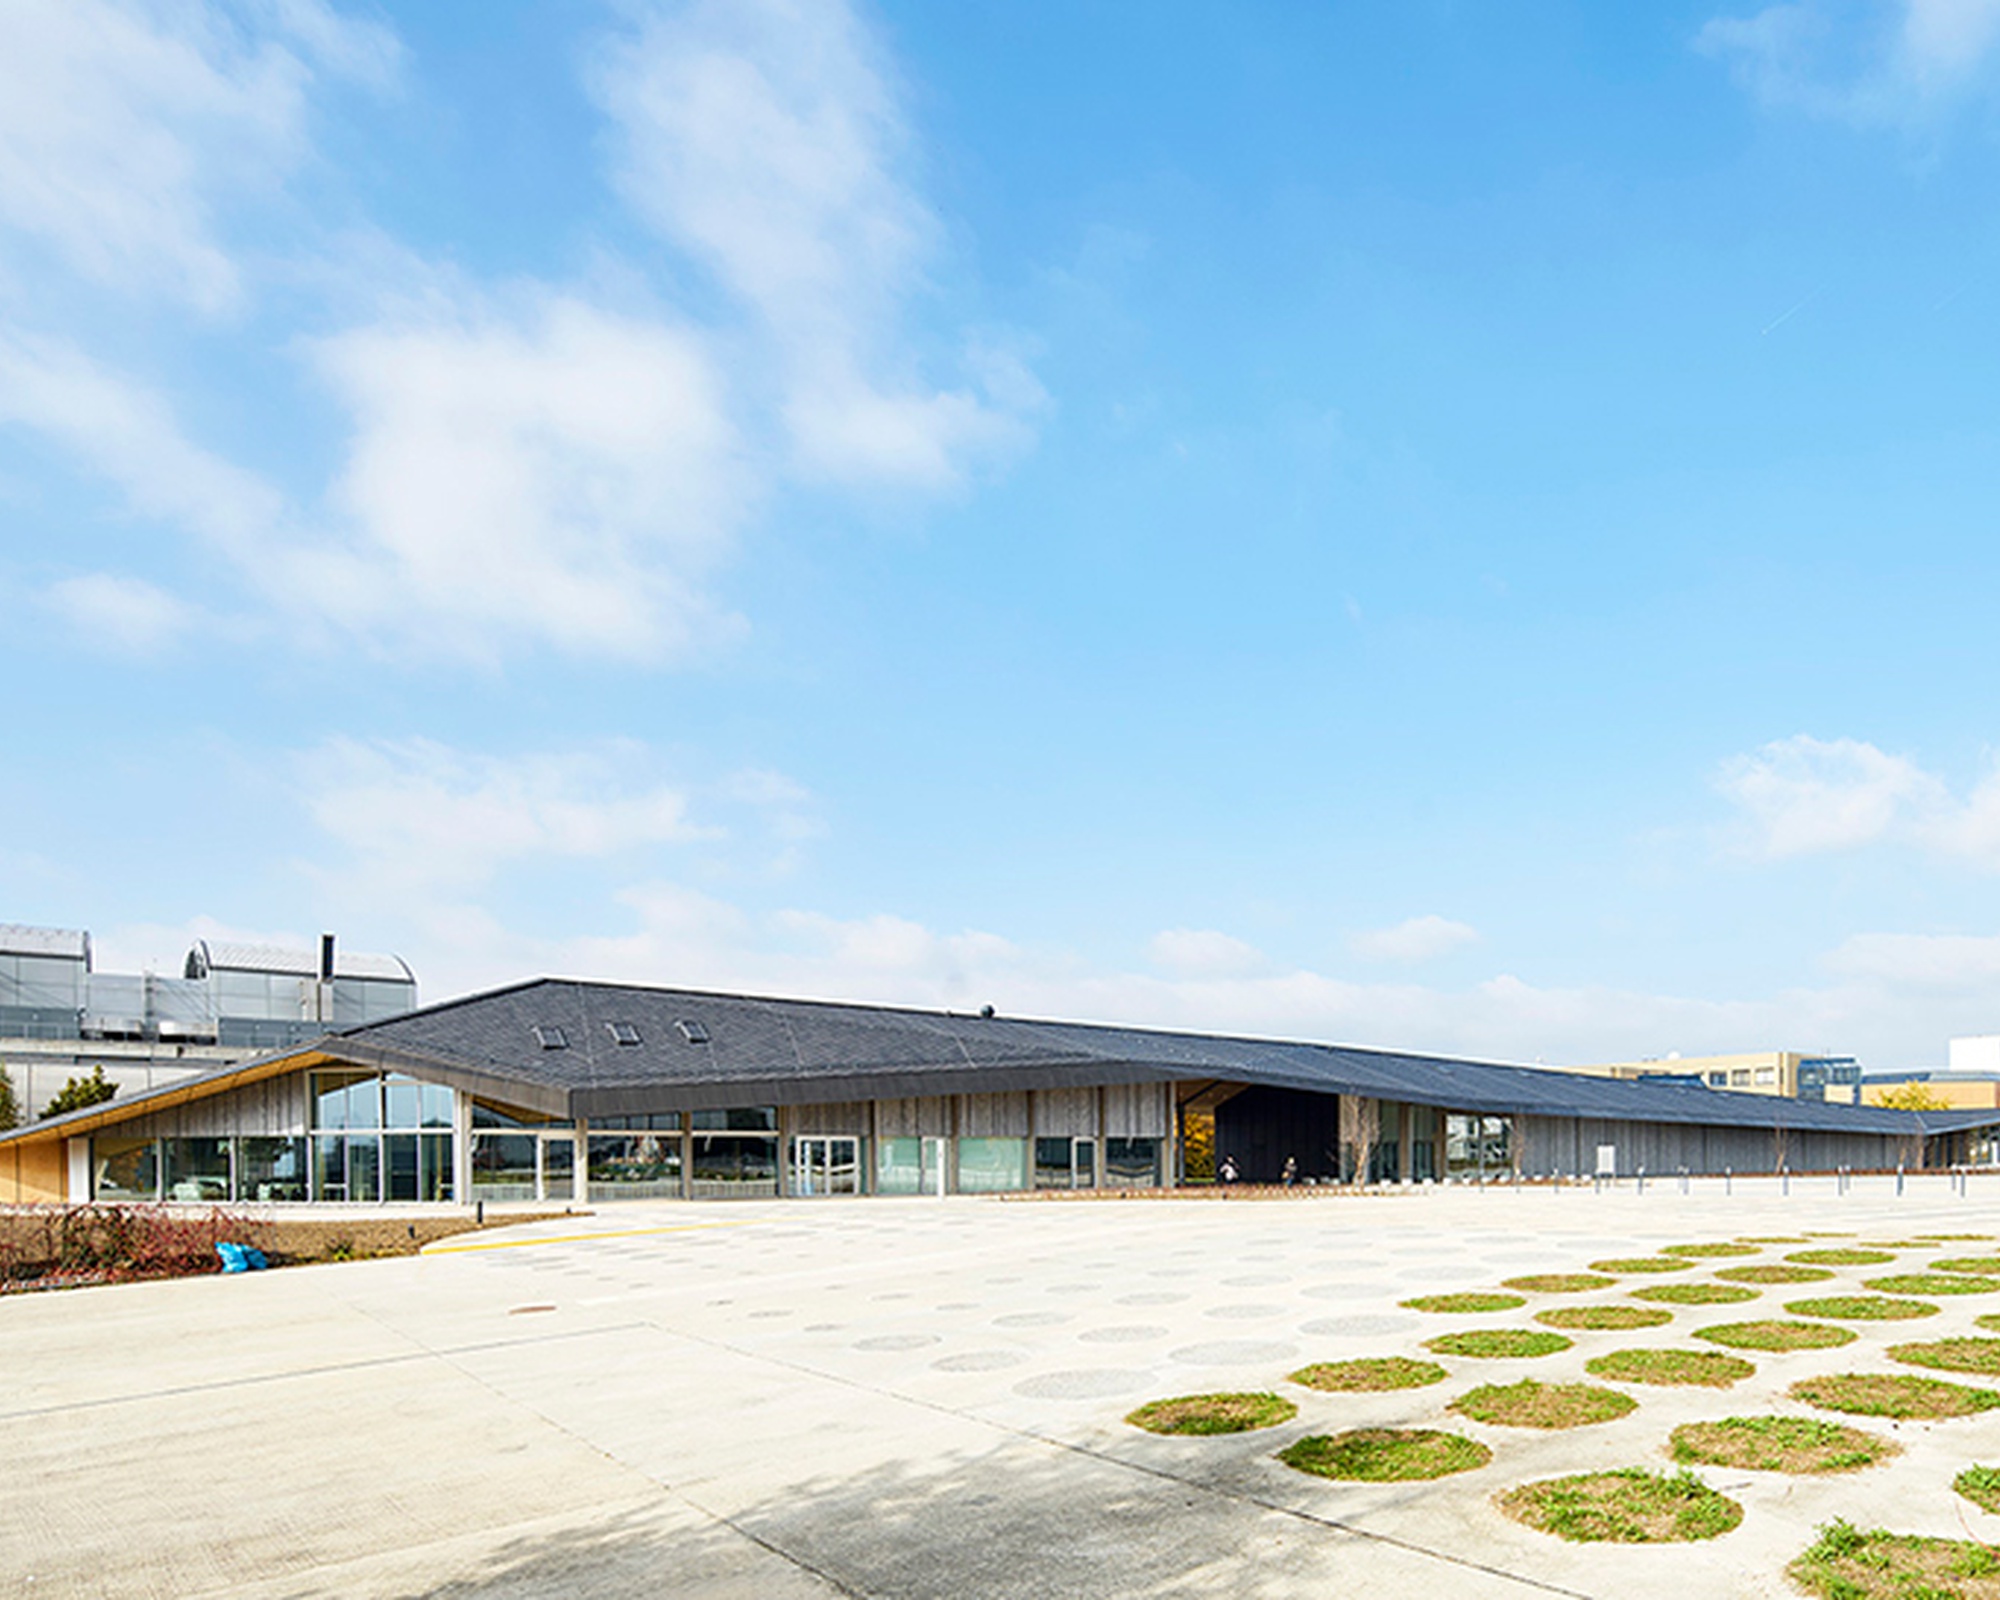 NEW BUILDING EPFL. ESPACES ET PAVILLONS